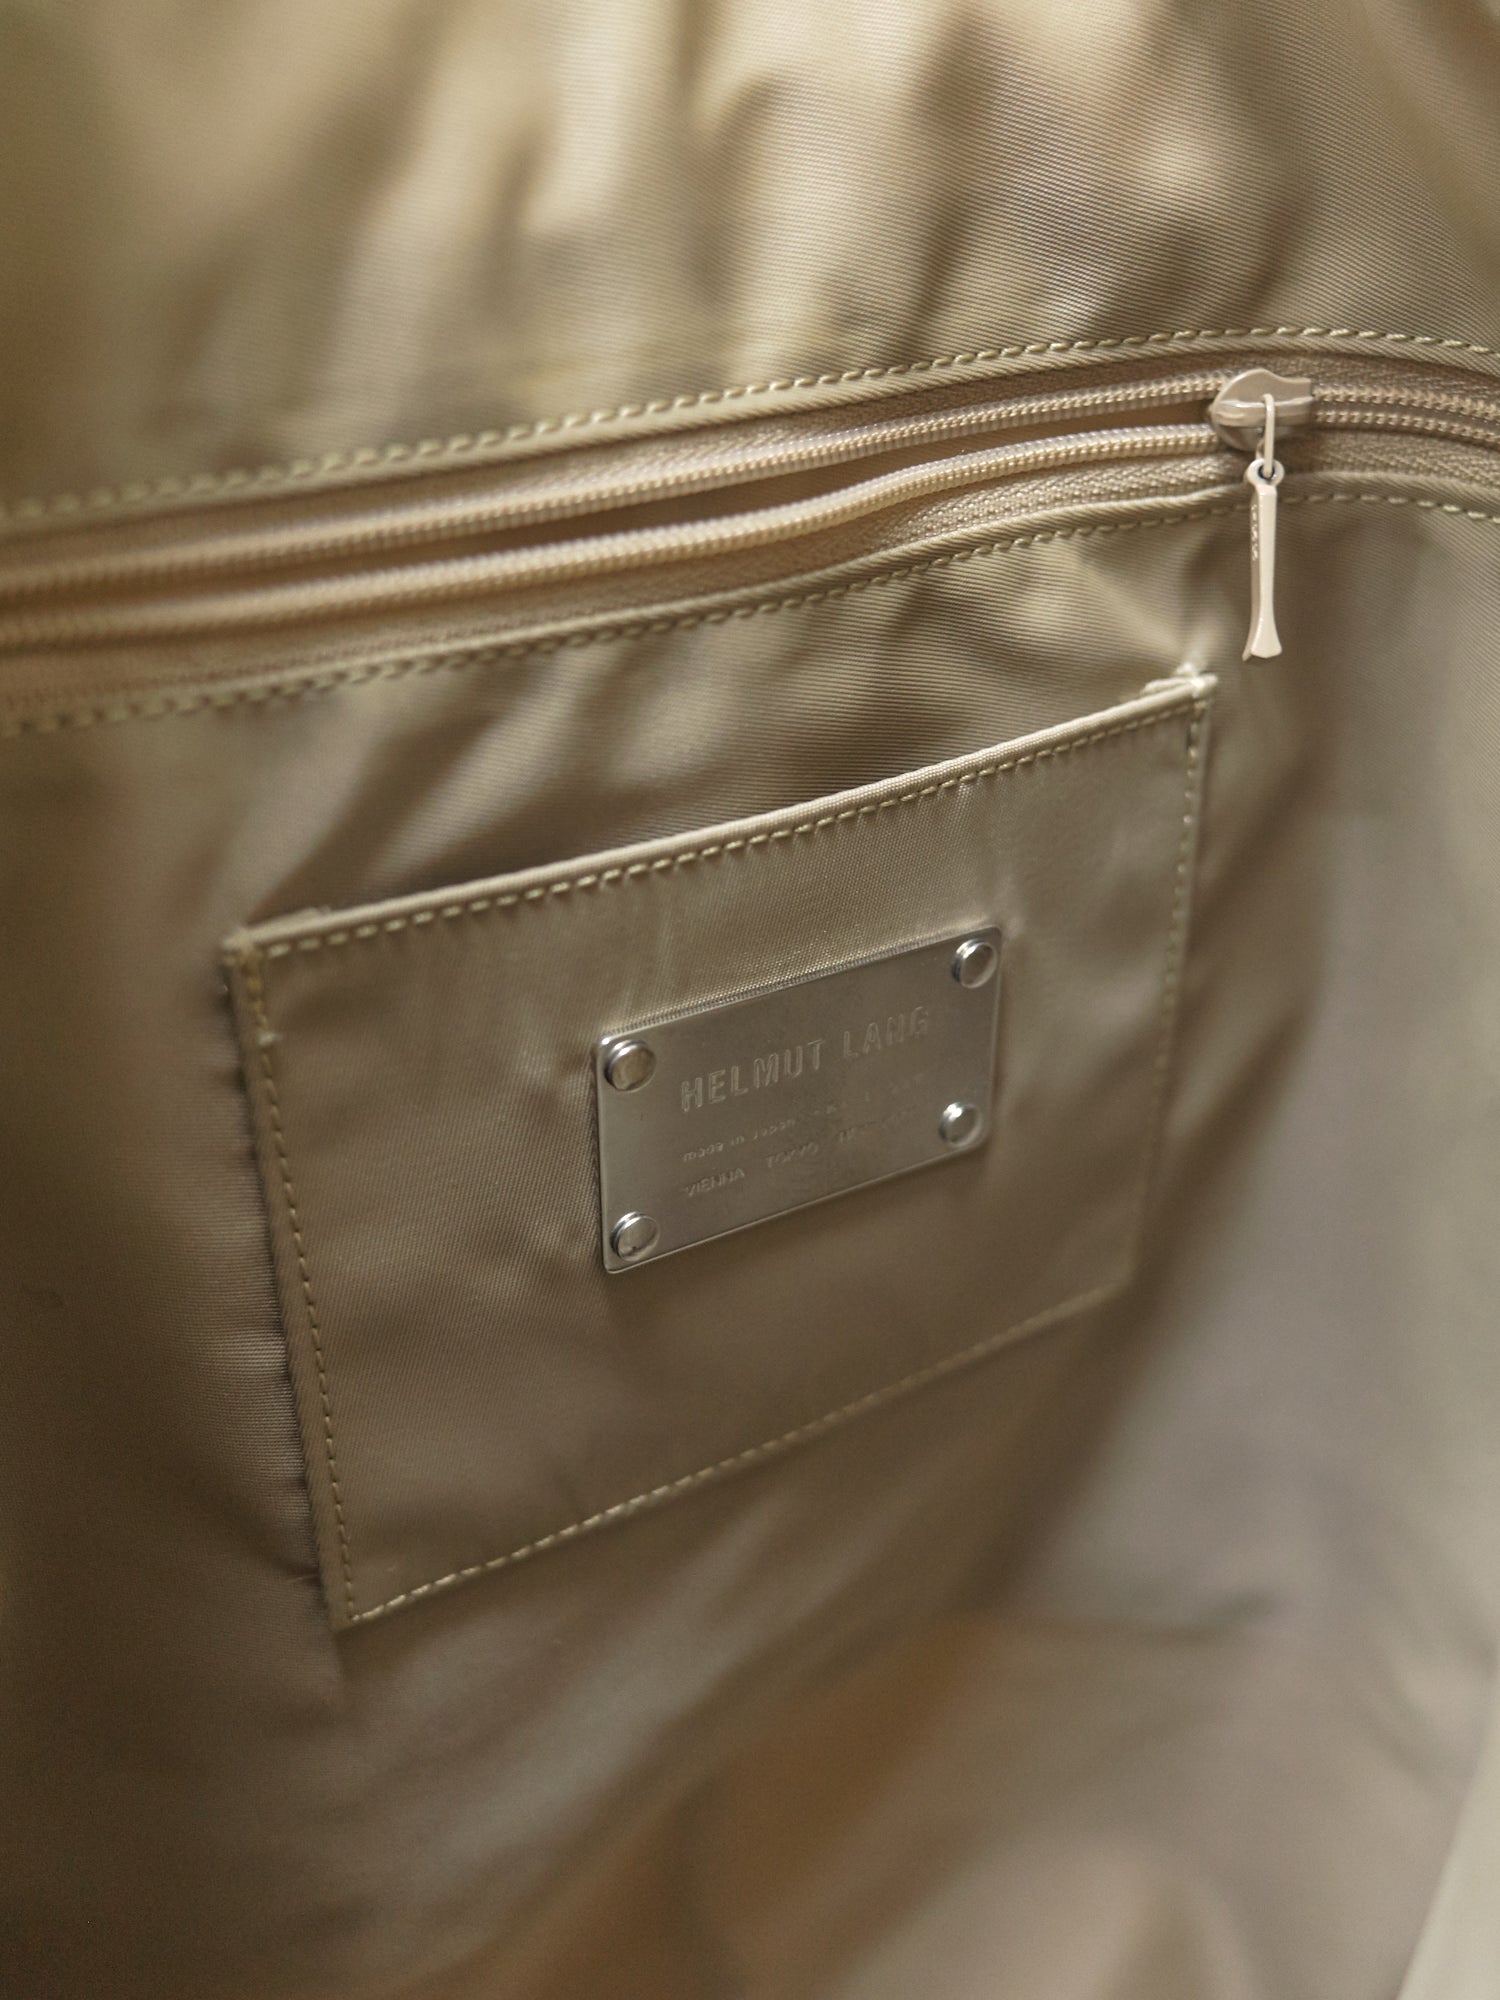 Helmut Lang 1990s-2000s beige nylon twill shoulder bag